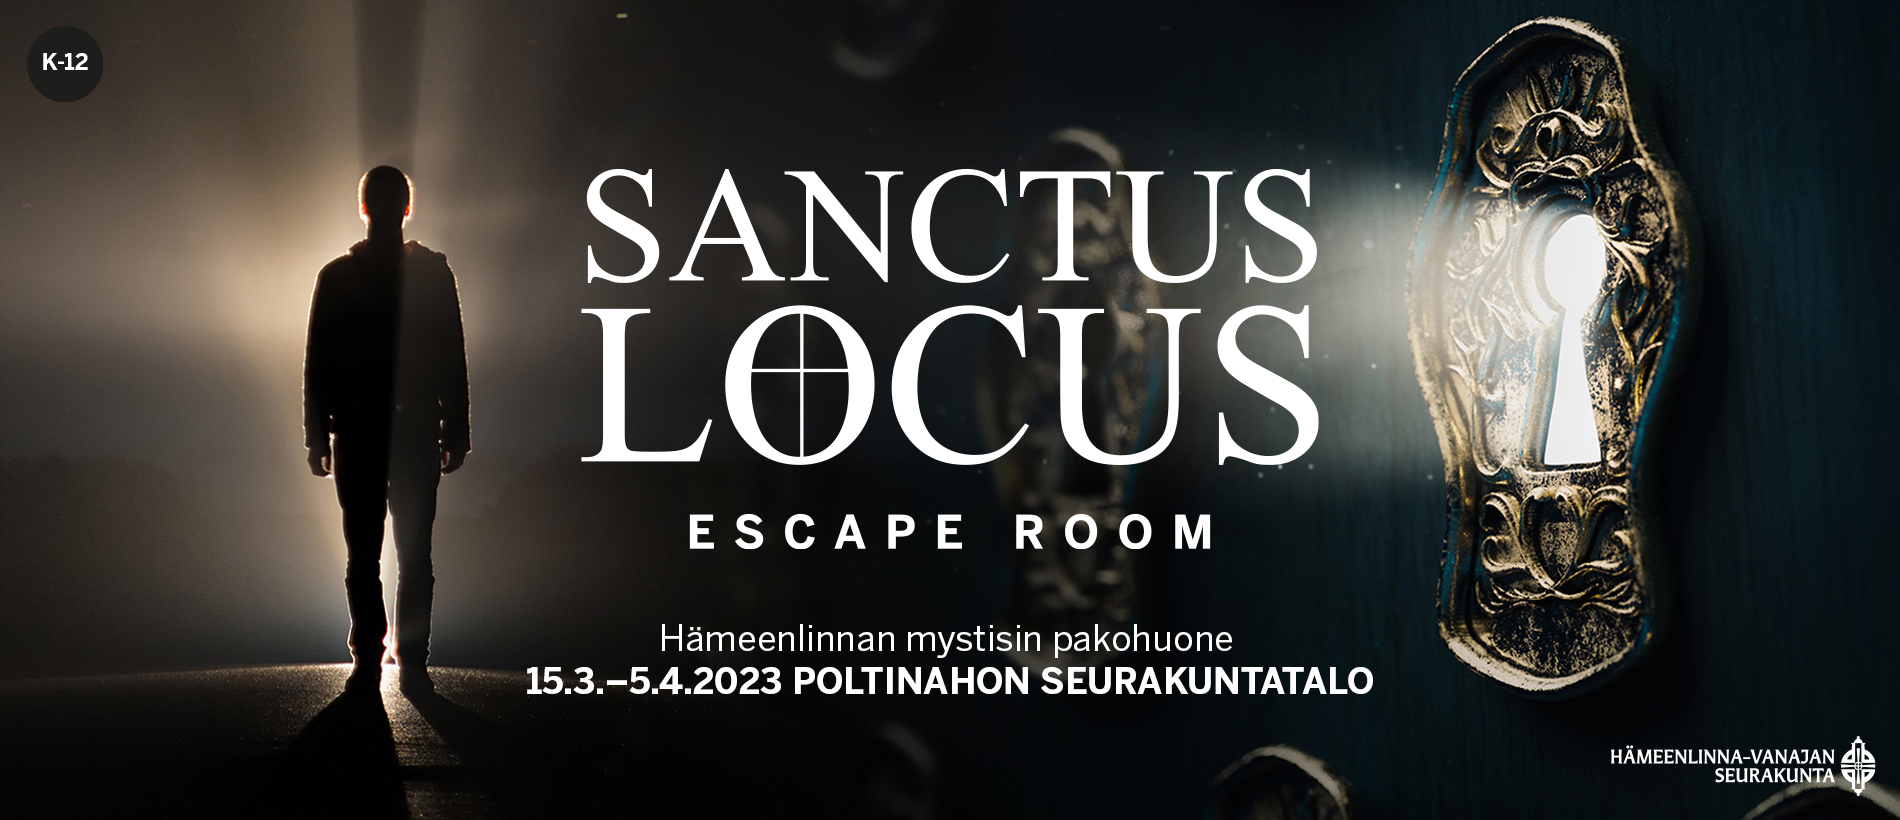 Sanctus locus escape room